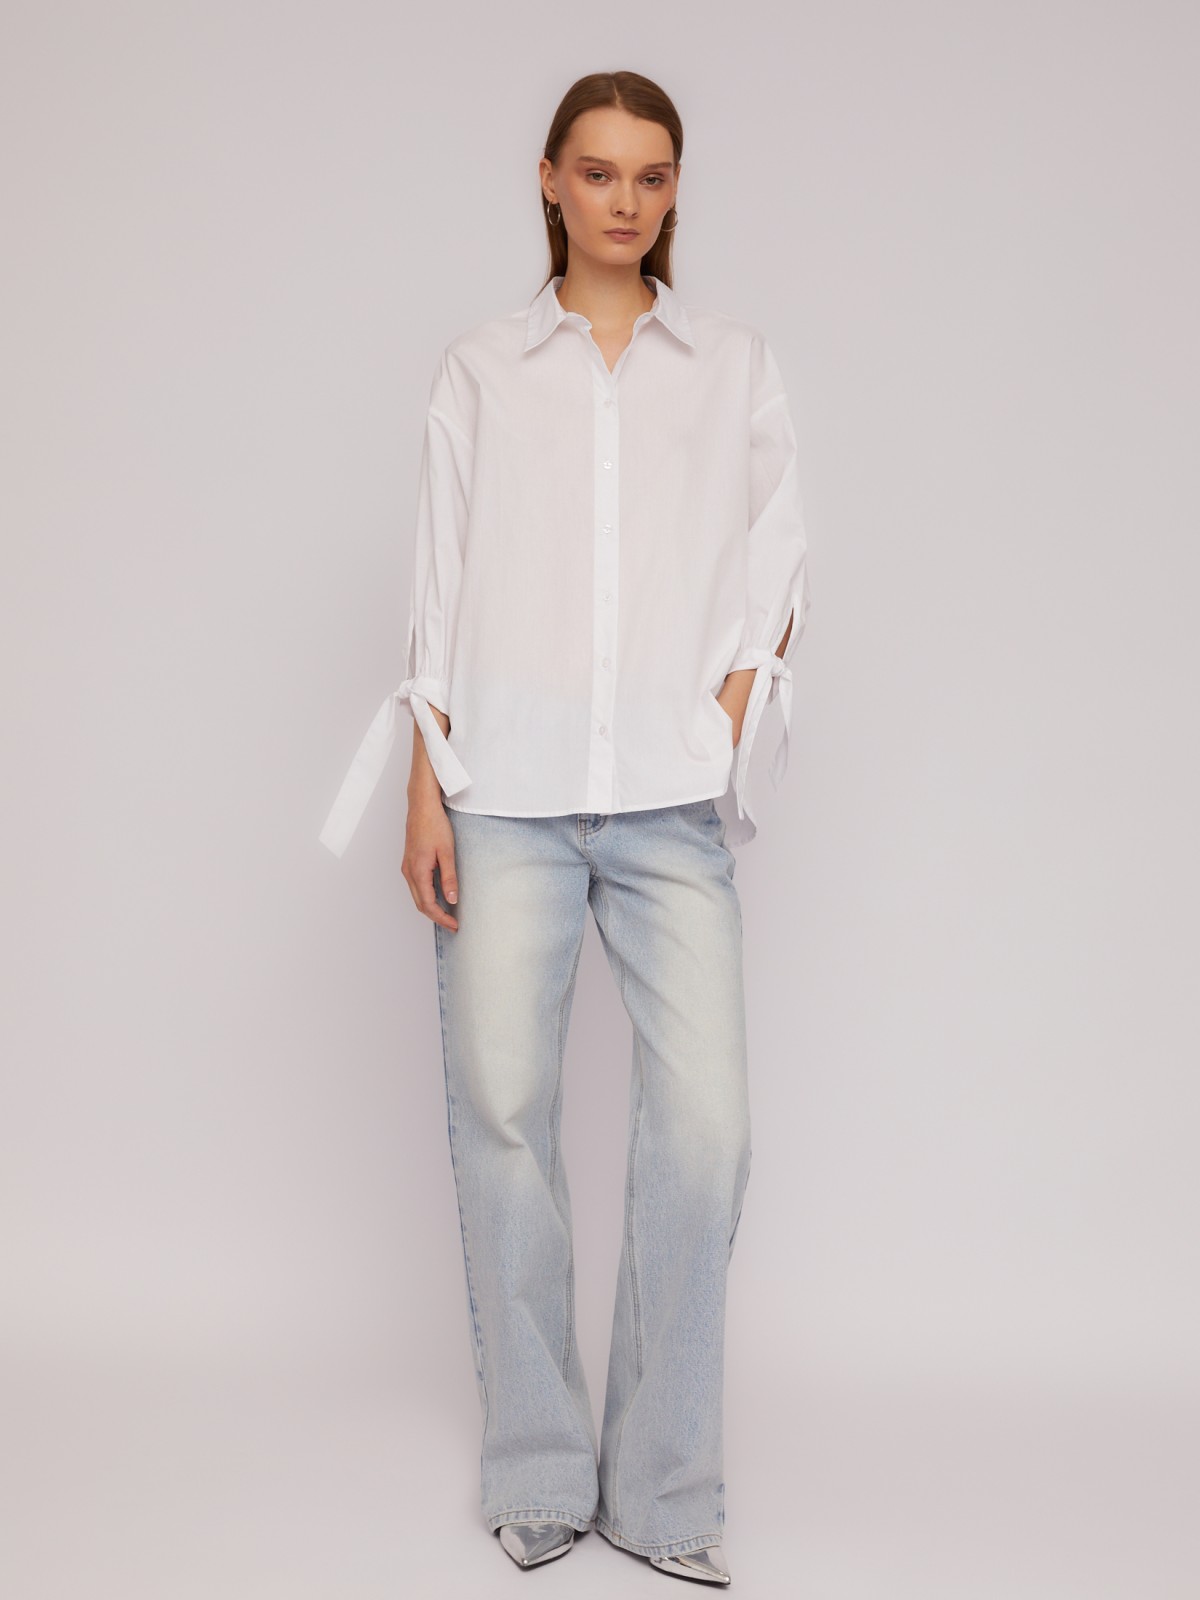 Рубашка из хлопка оверсайз силуэта с акцентными манжетами zolla 024211159033, цвет белый, размер XS - фото 2